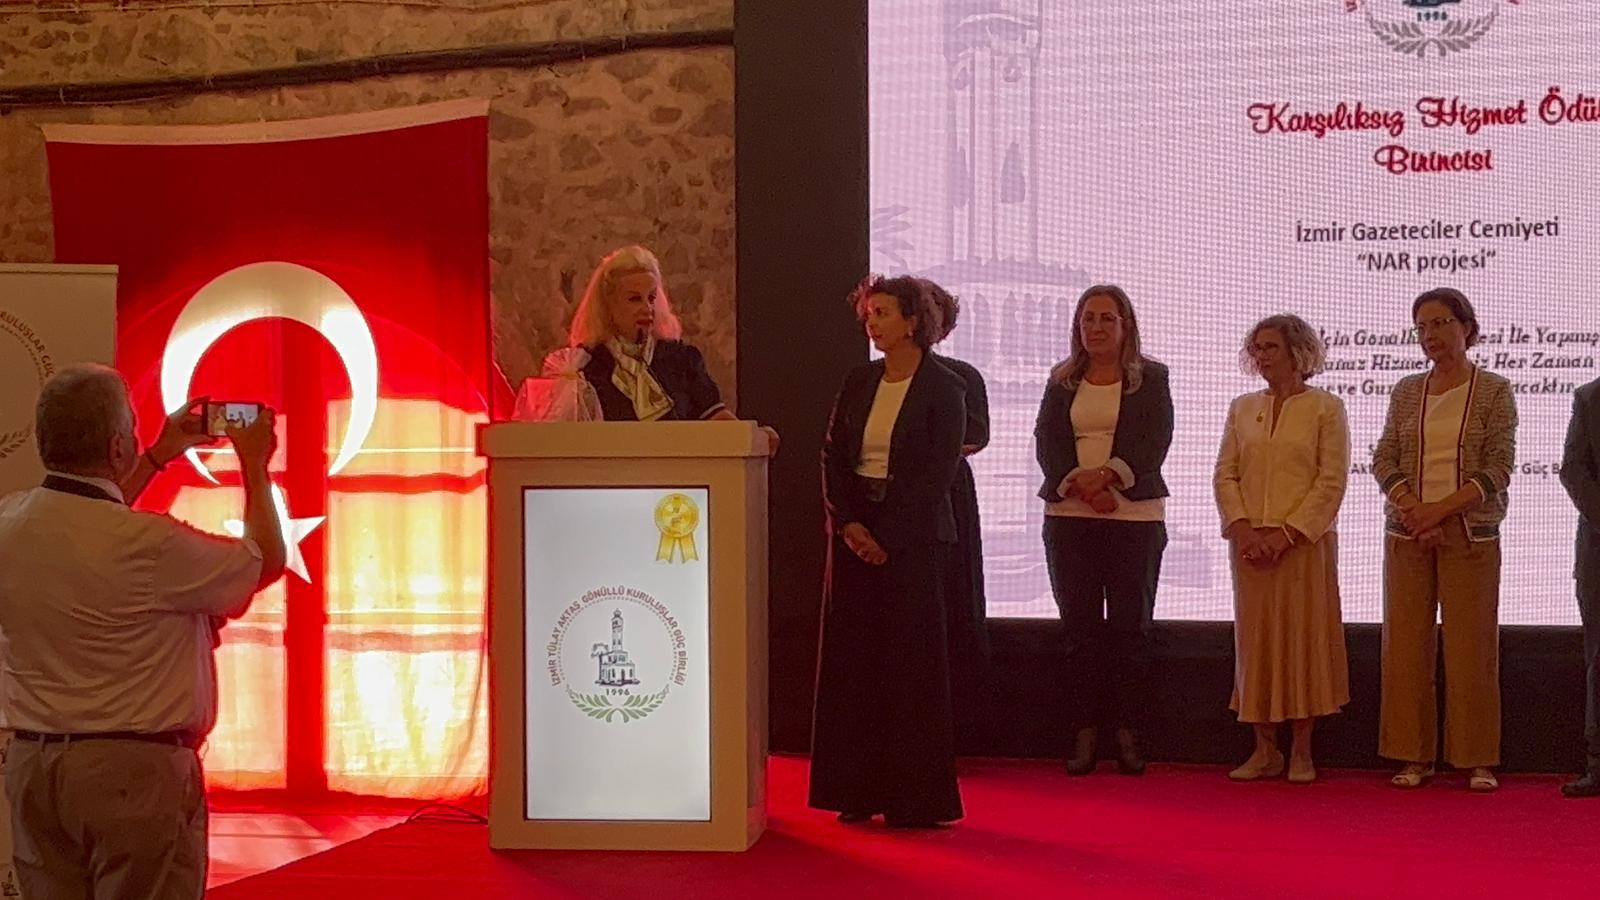 İzmir Gazeteciler Cemiyeti’ne Birincilik Ödülü